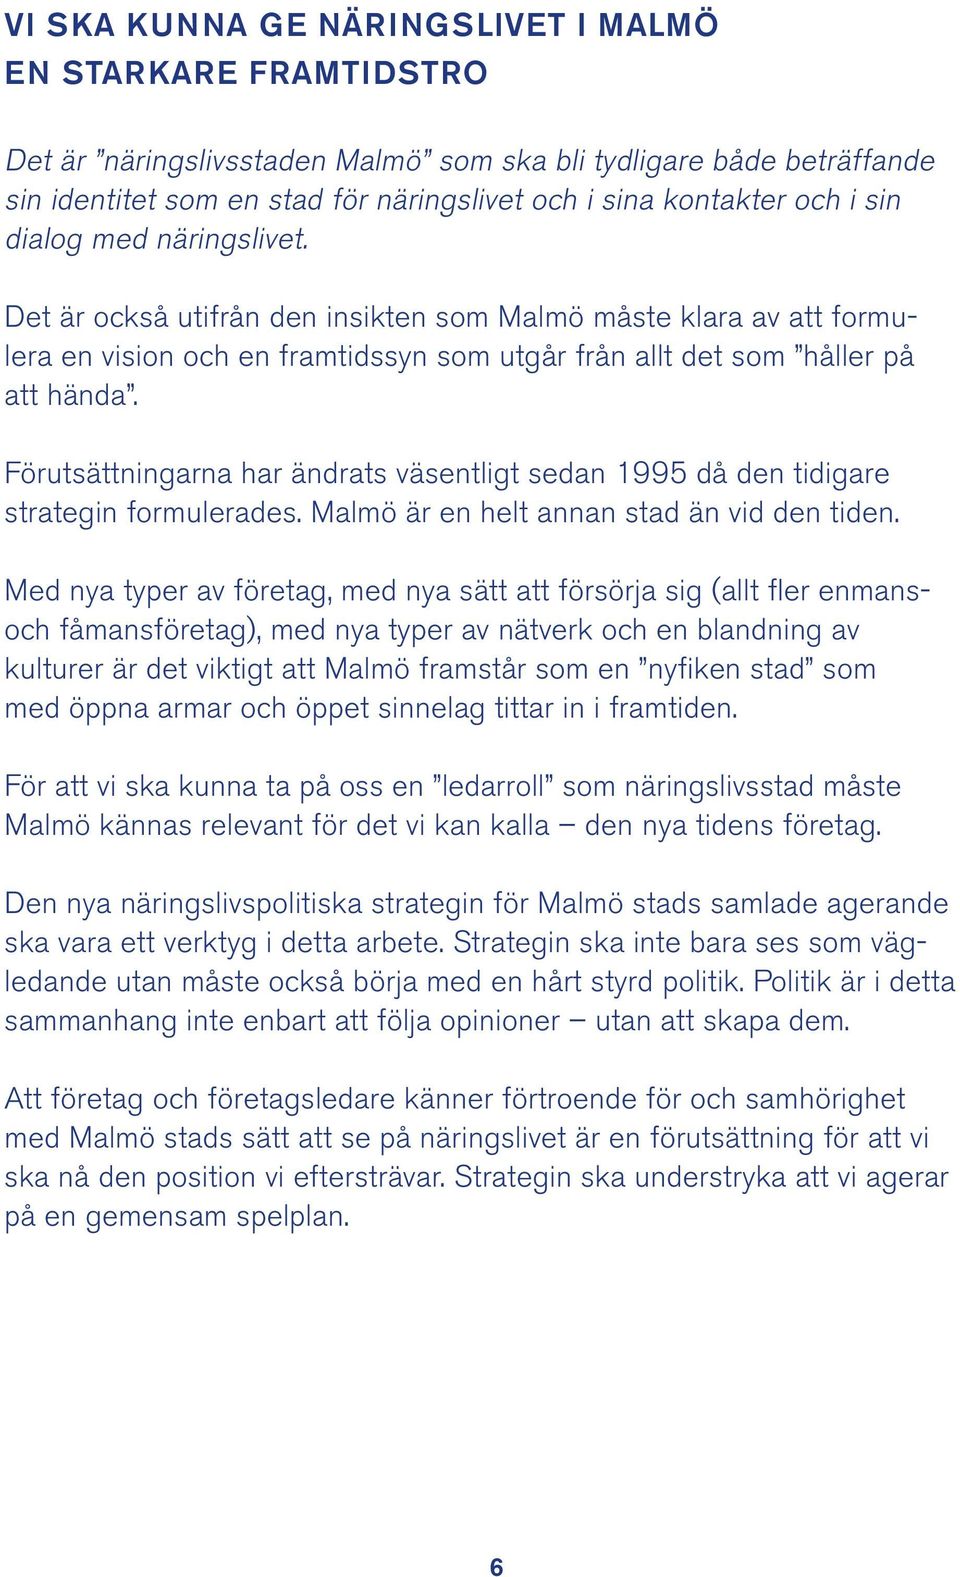 Förutsättningarna har ändrats väsentligt sedan 1995 då den tidigare strategin formulerades. Malmö är en helt annan stad än vid den tiden.